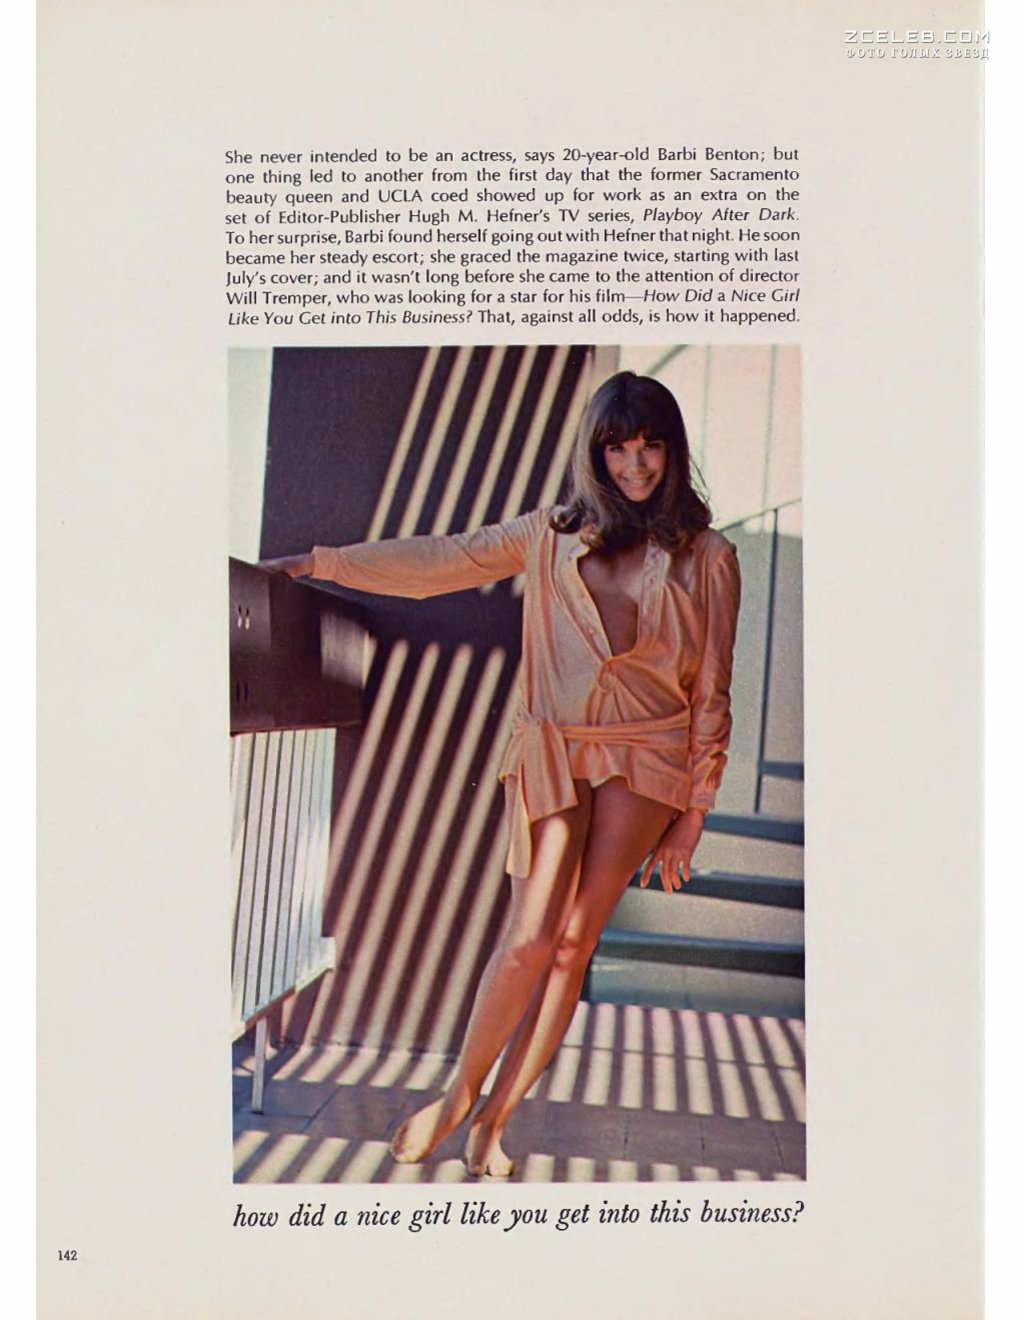 Сочная голая грудь Барби Бентон на фото в журнале Playboy, Март 1970.